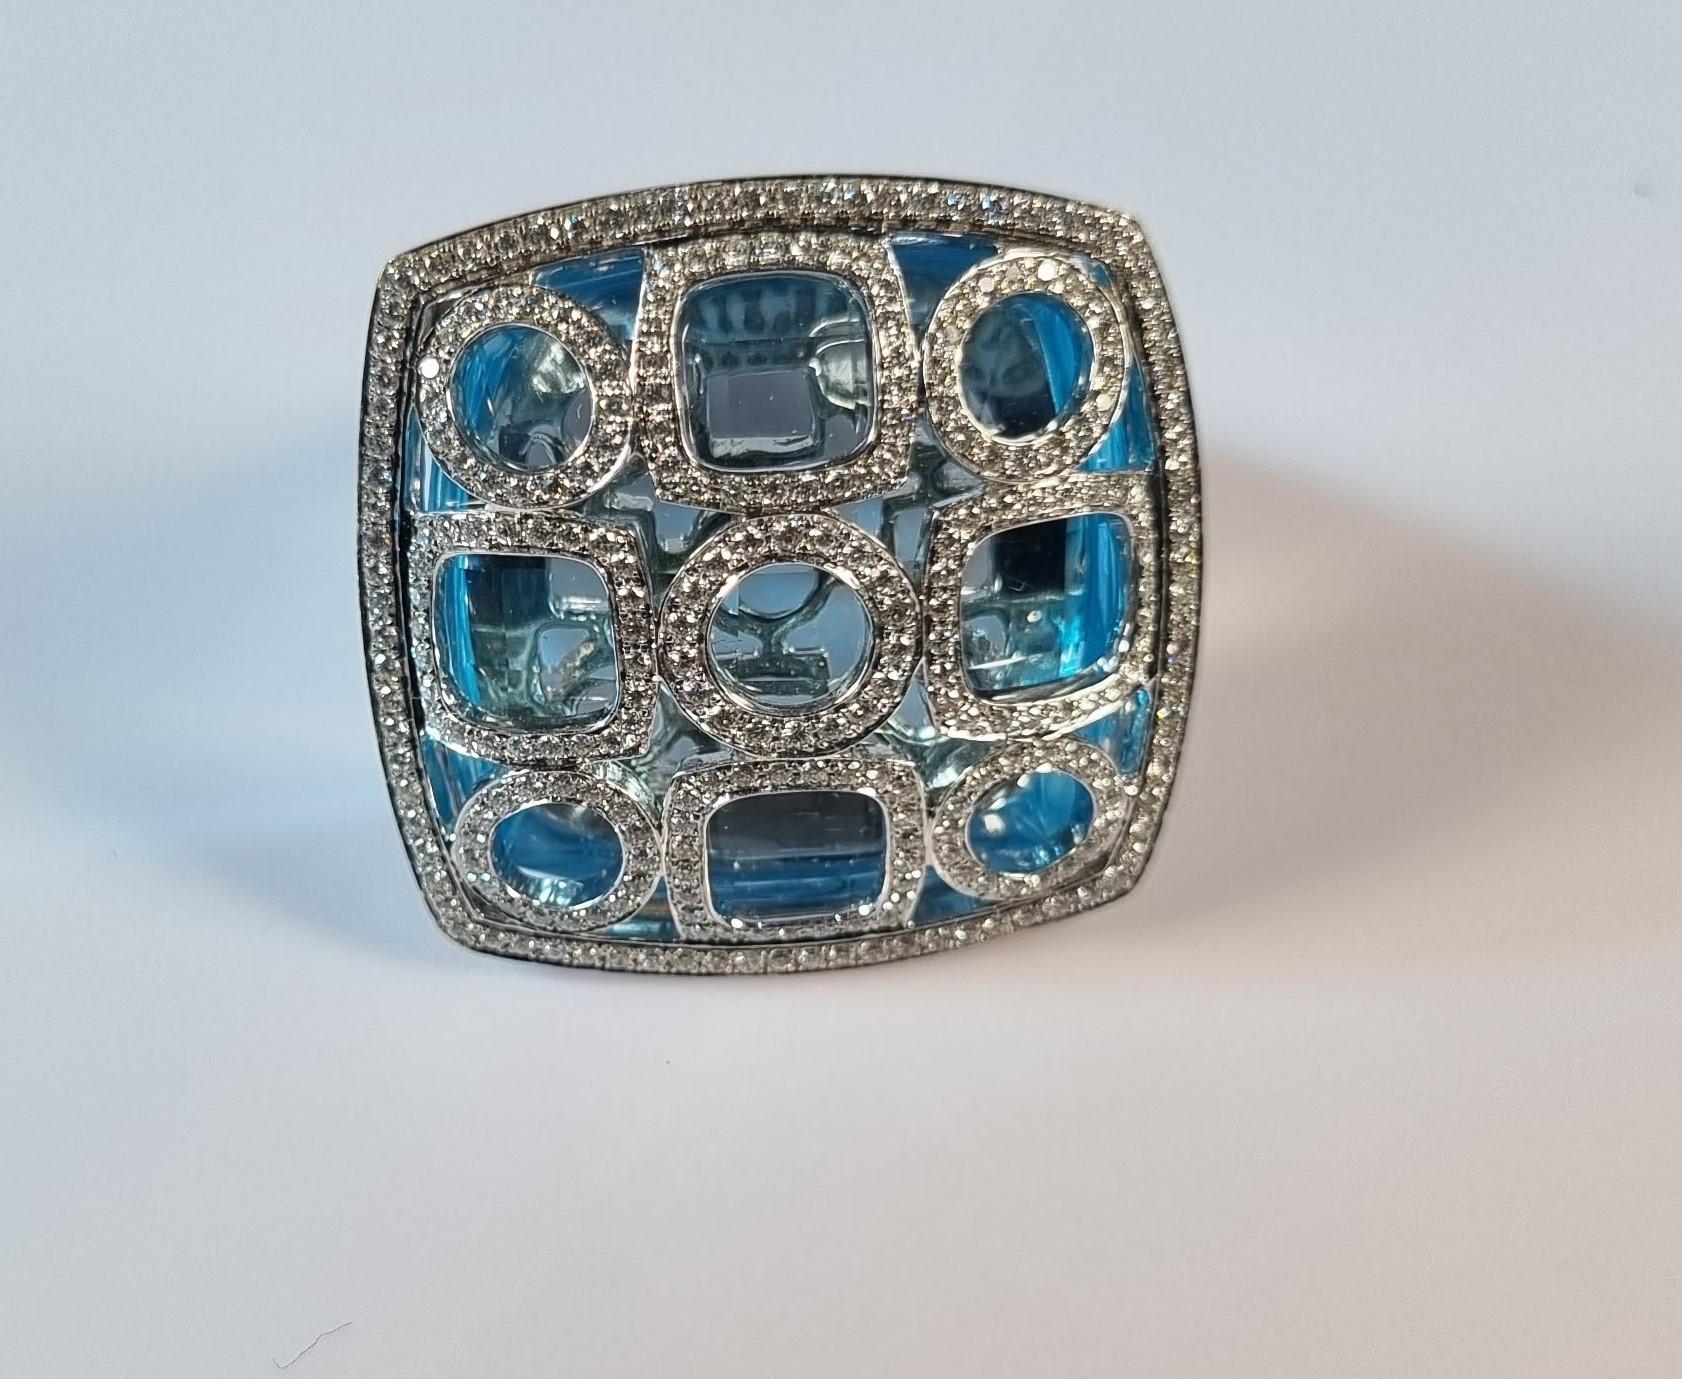 Blauer Topas und Geometrie der Diamanten in 18k Weißgold Ring 
Irama Pradera ist eine dynamische und aufgeschlossene Designerin aus Spanien, die immer auf der Suche nach den besten Edelsteinen ist und klassische mit zeitgenössischen Halterungen und